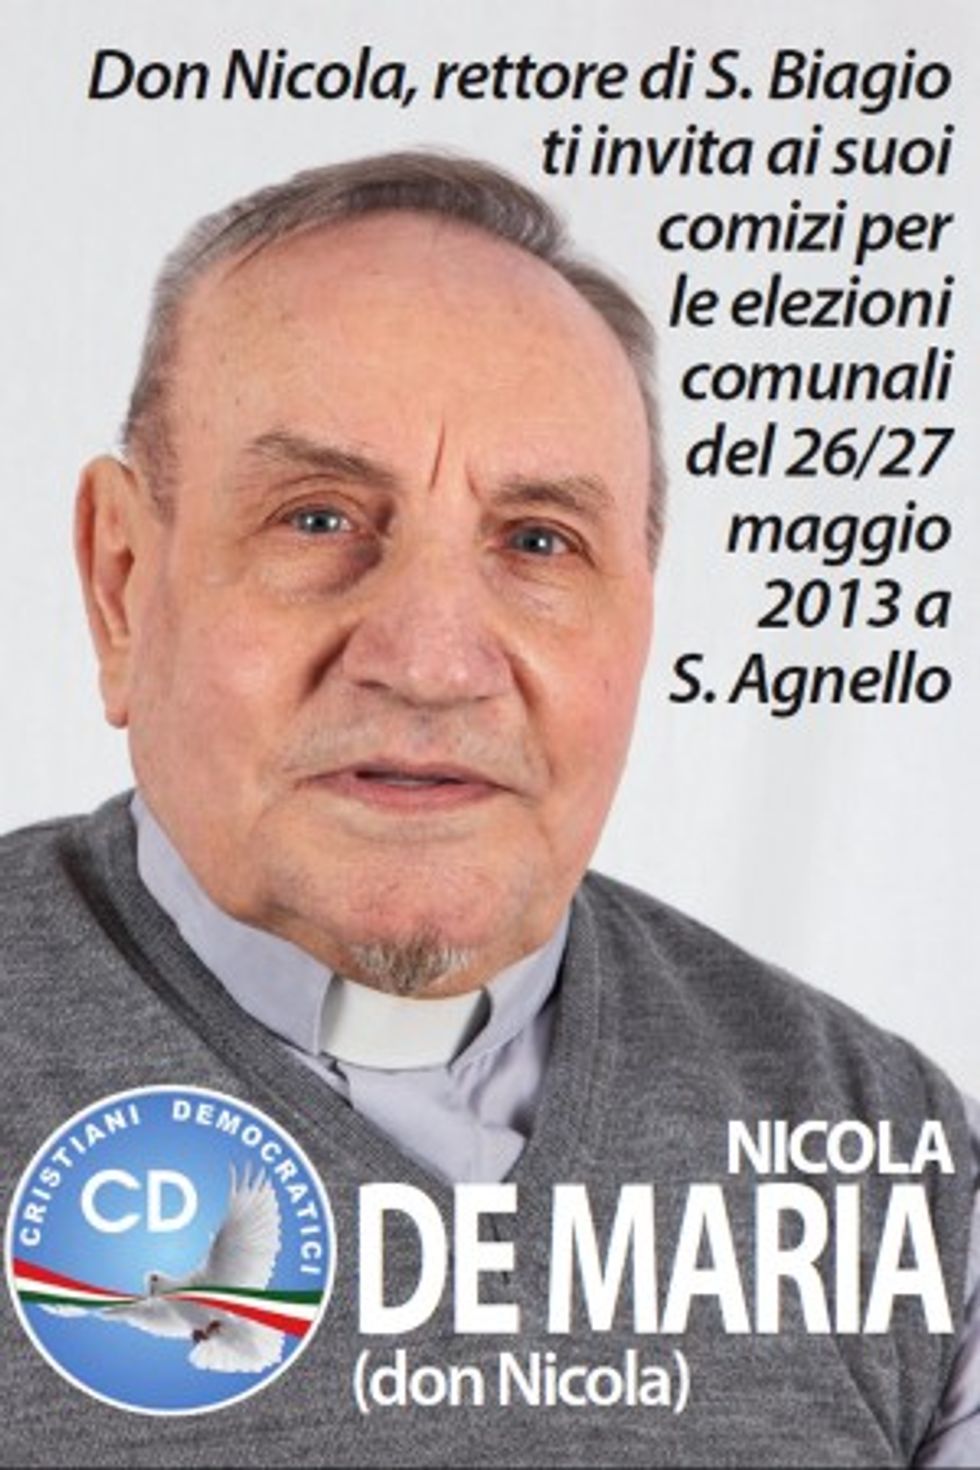 "Dal Vaticano 150 euro per ogni disoccupato". Parola di Don Nicola